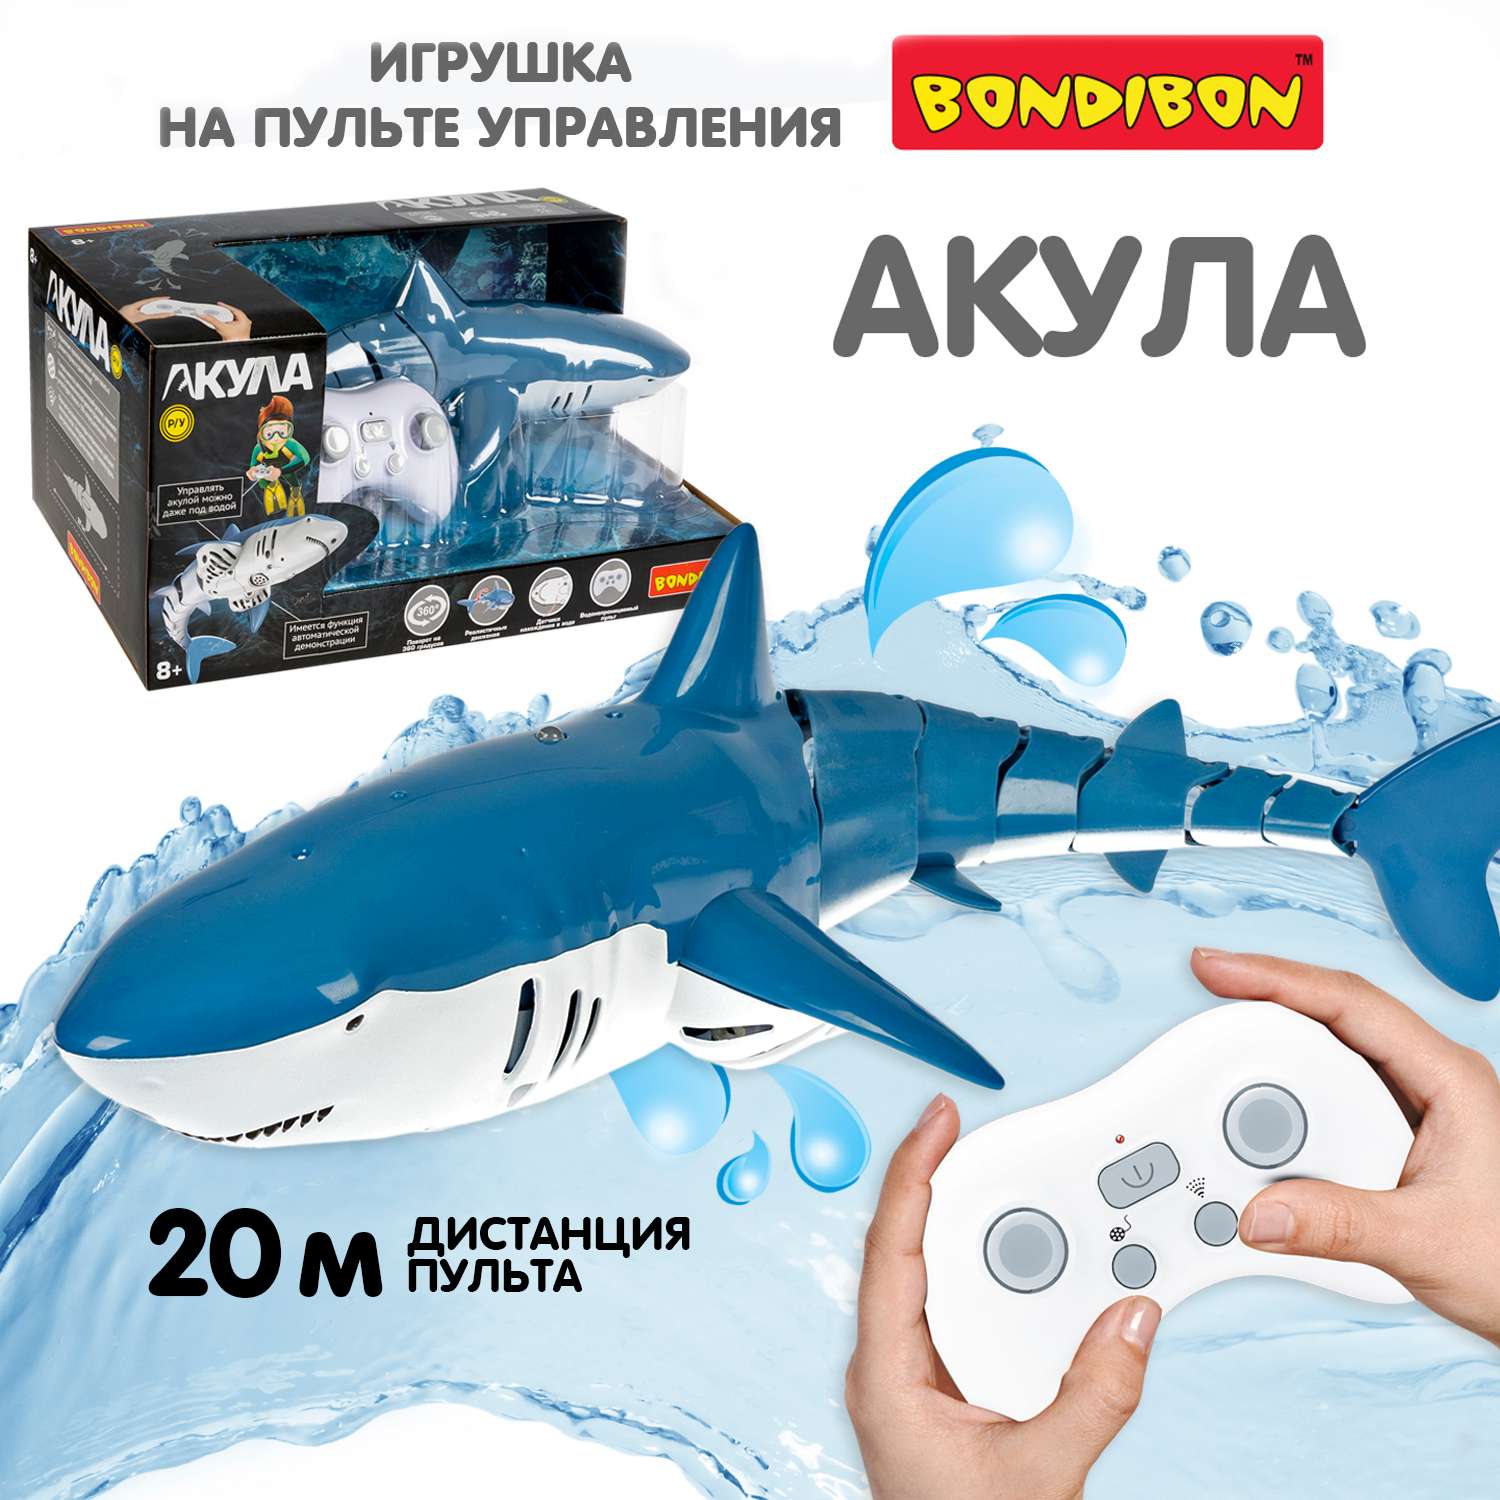 Игрушка радиоуправляемая BONDIBON Робот Акула детская водная игрушка - фото 1